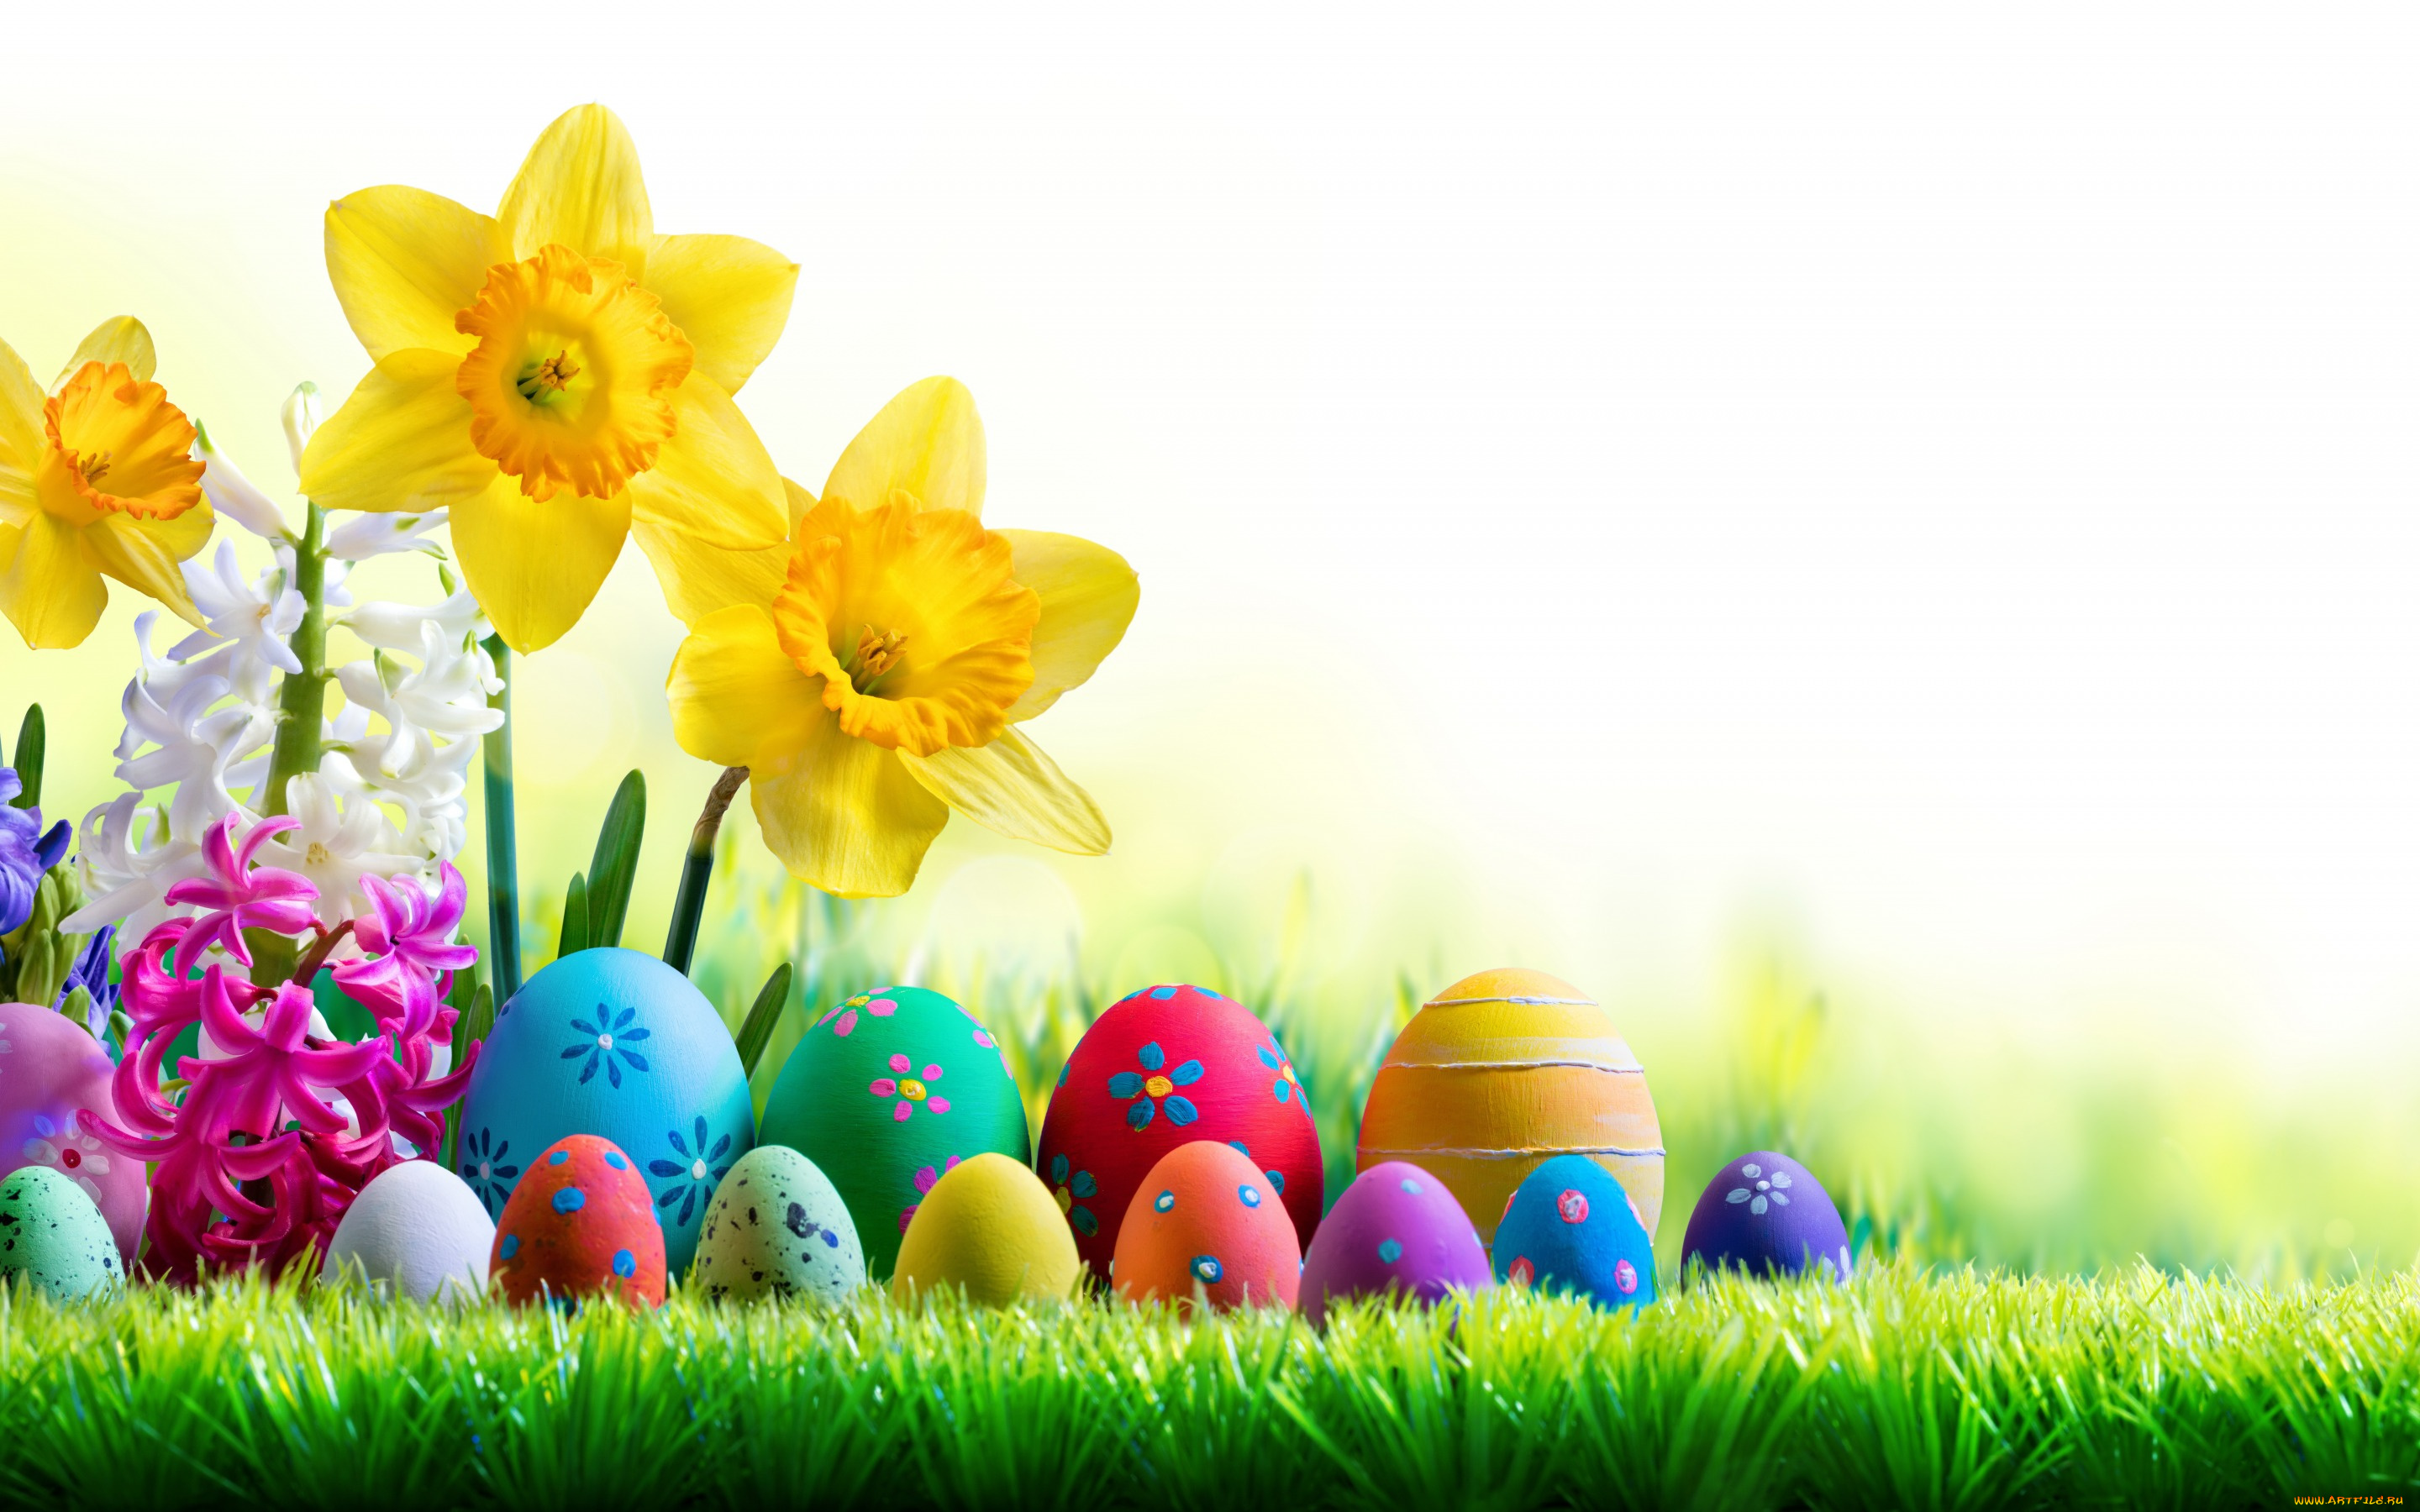 праздничные, пасха, весна, трава, небо, солнце, easter, нарциссы, happy, цветы, яйца, крашеные, spring, flowers, eggs, decoration